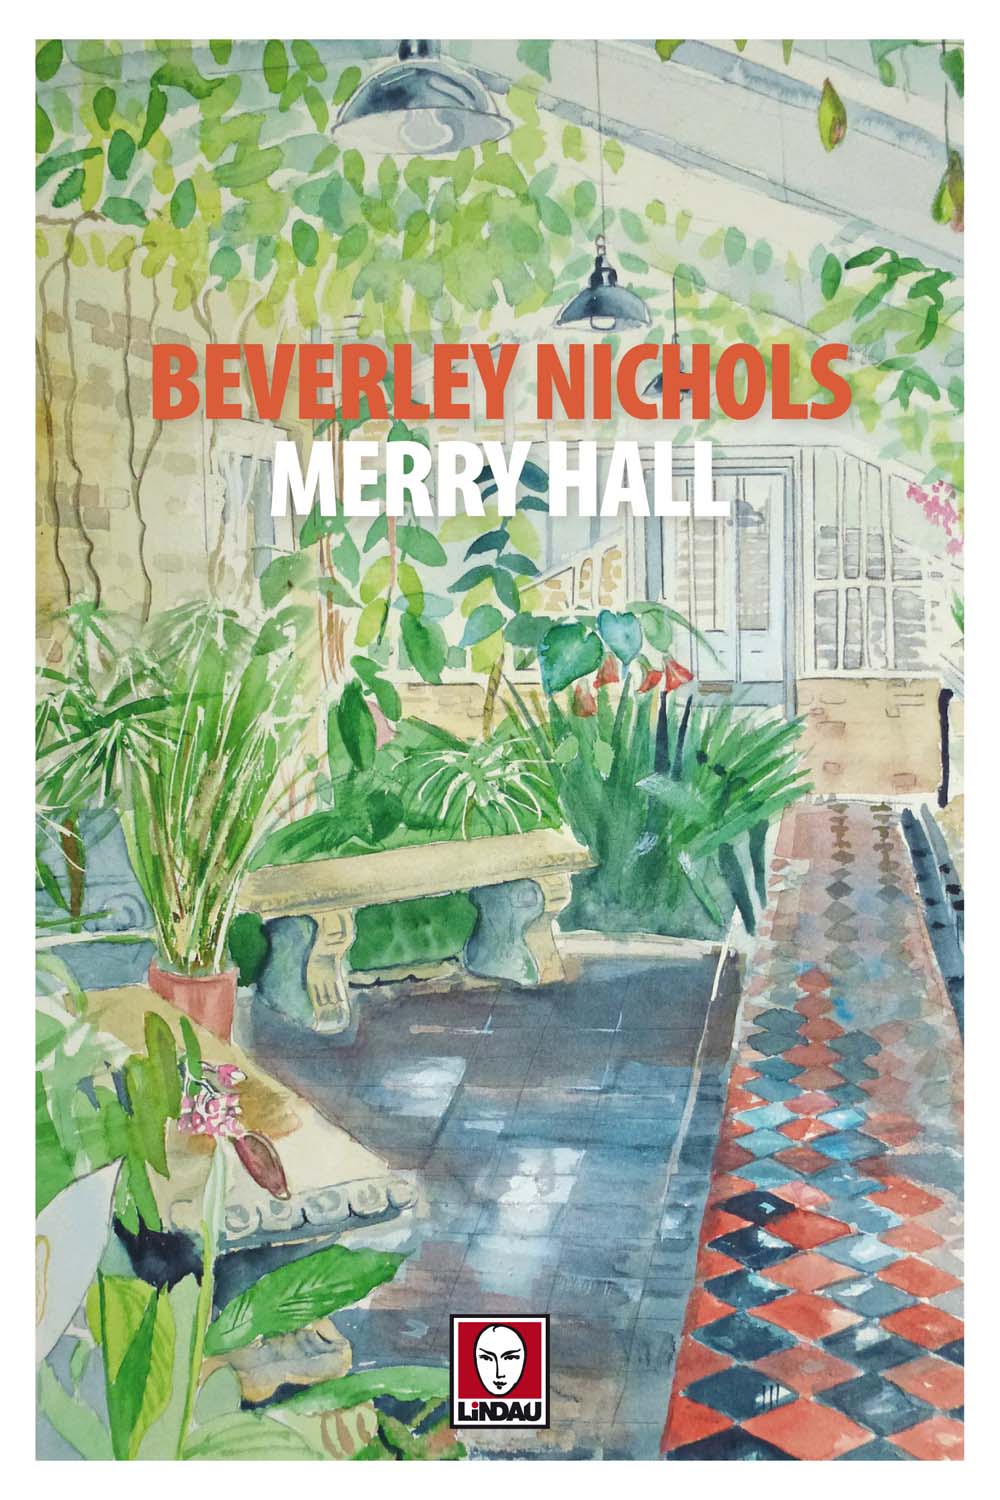 Libri Beverley Nichols - Merry Hall NUOVO SIGILLATO, EDIZIONE DEL 26/10/2017 SUBITO DISPONIBILE